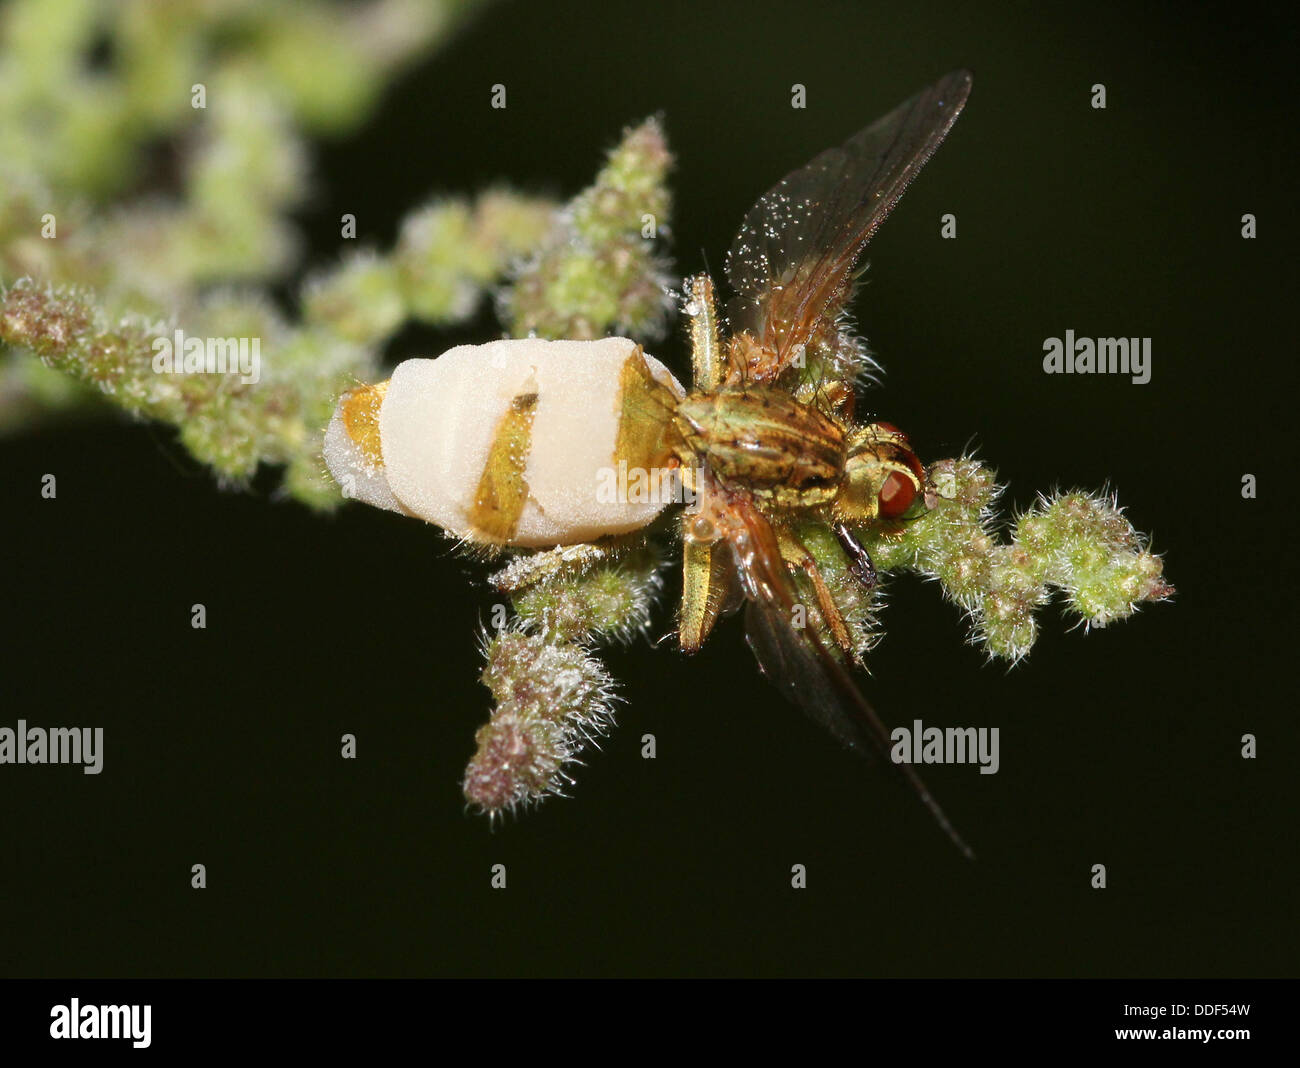 La bouse d'or jaune ou voler (Scatophaga stercoraria) avec une vue éclatée, corps couvert de mousse, causée par un champignon parasite Banque D'Images